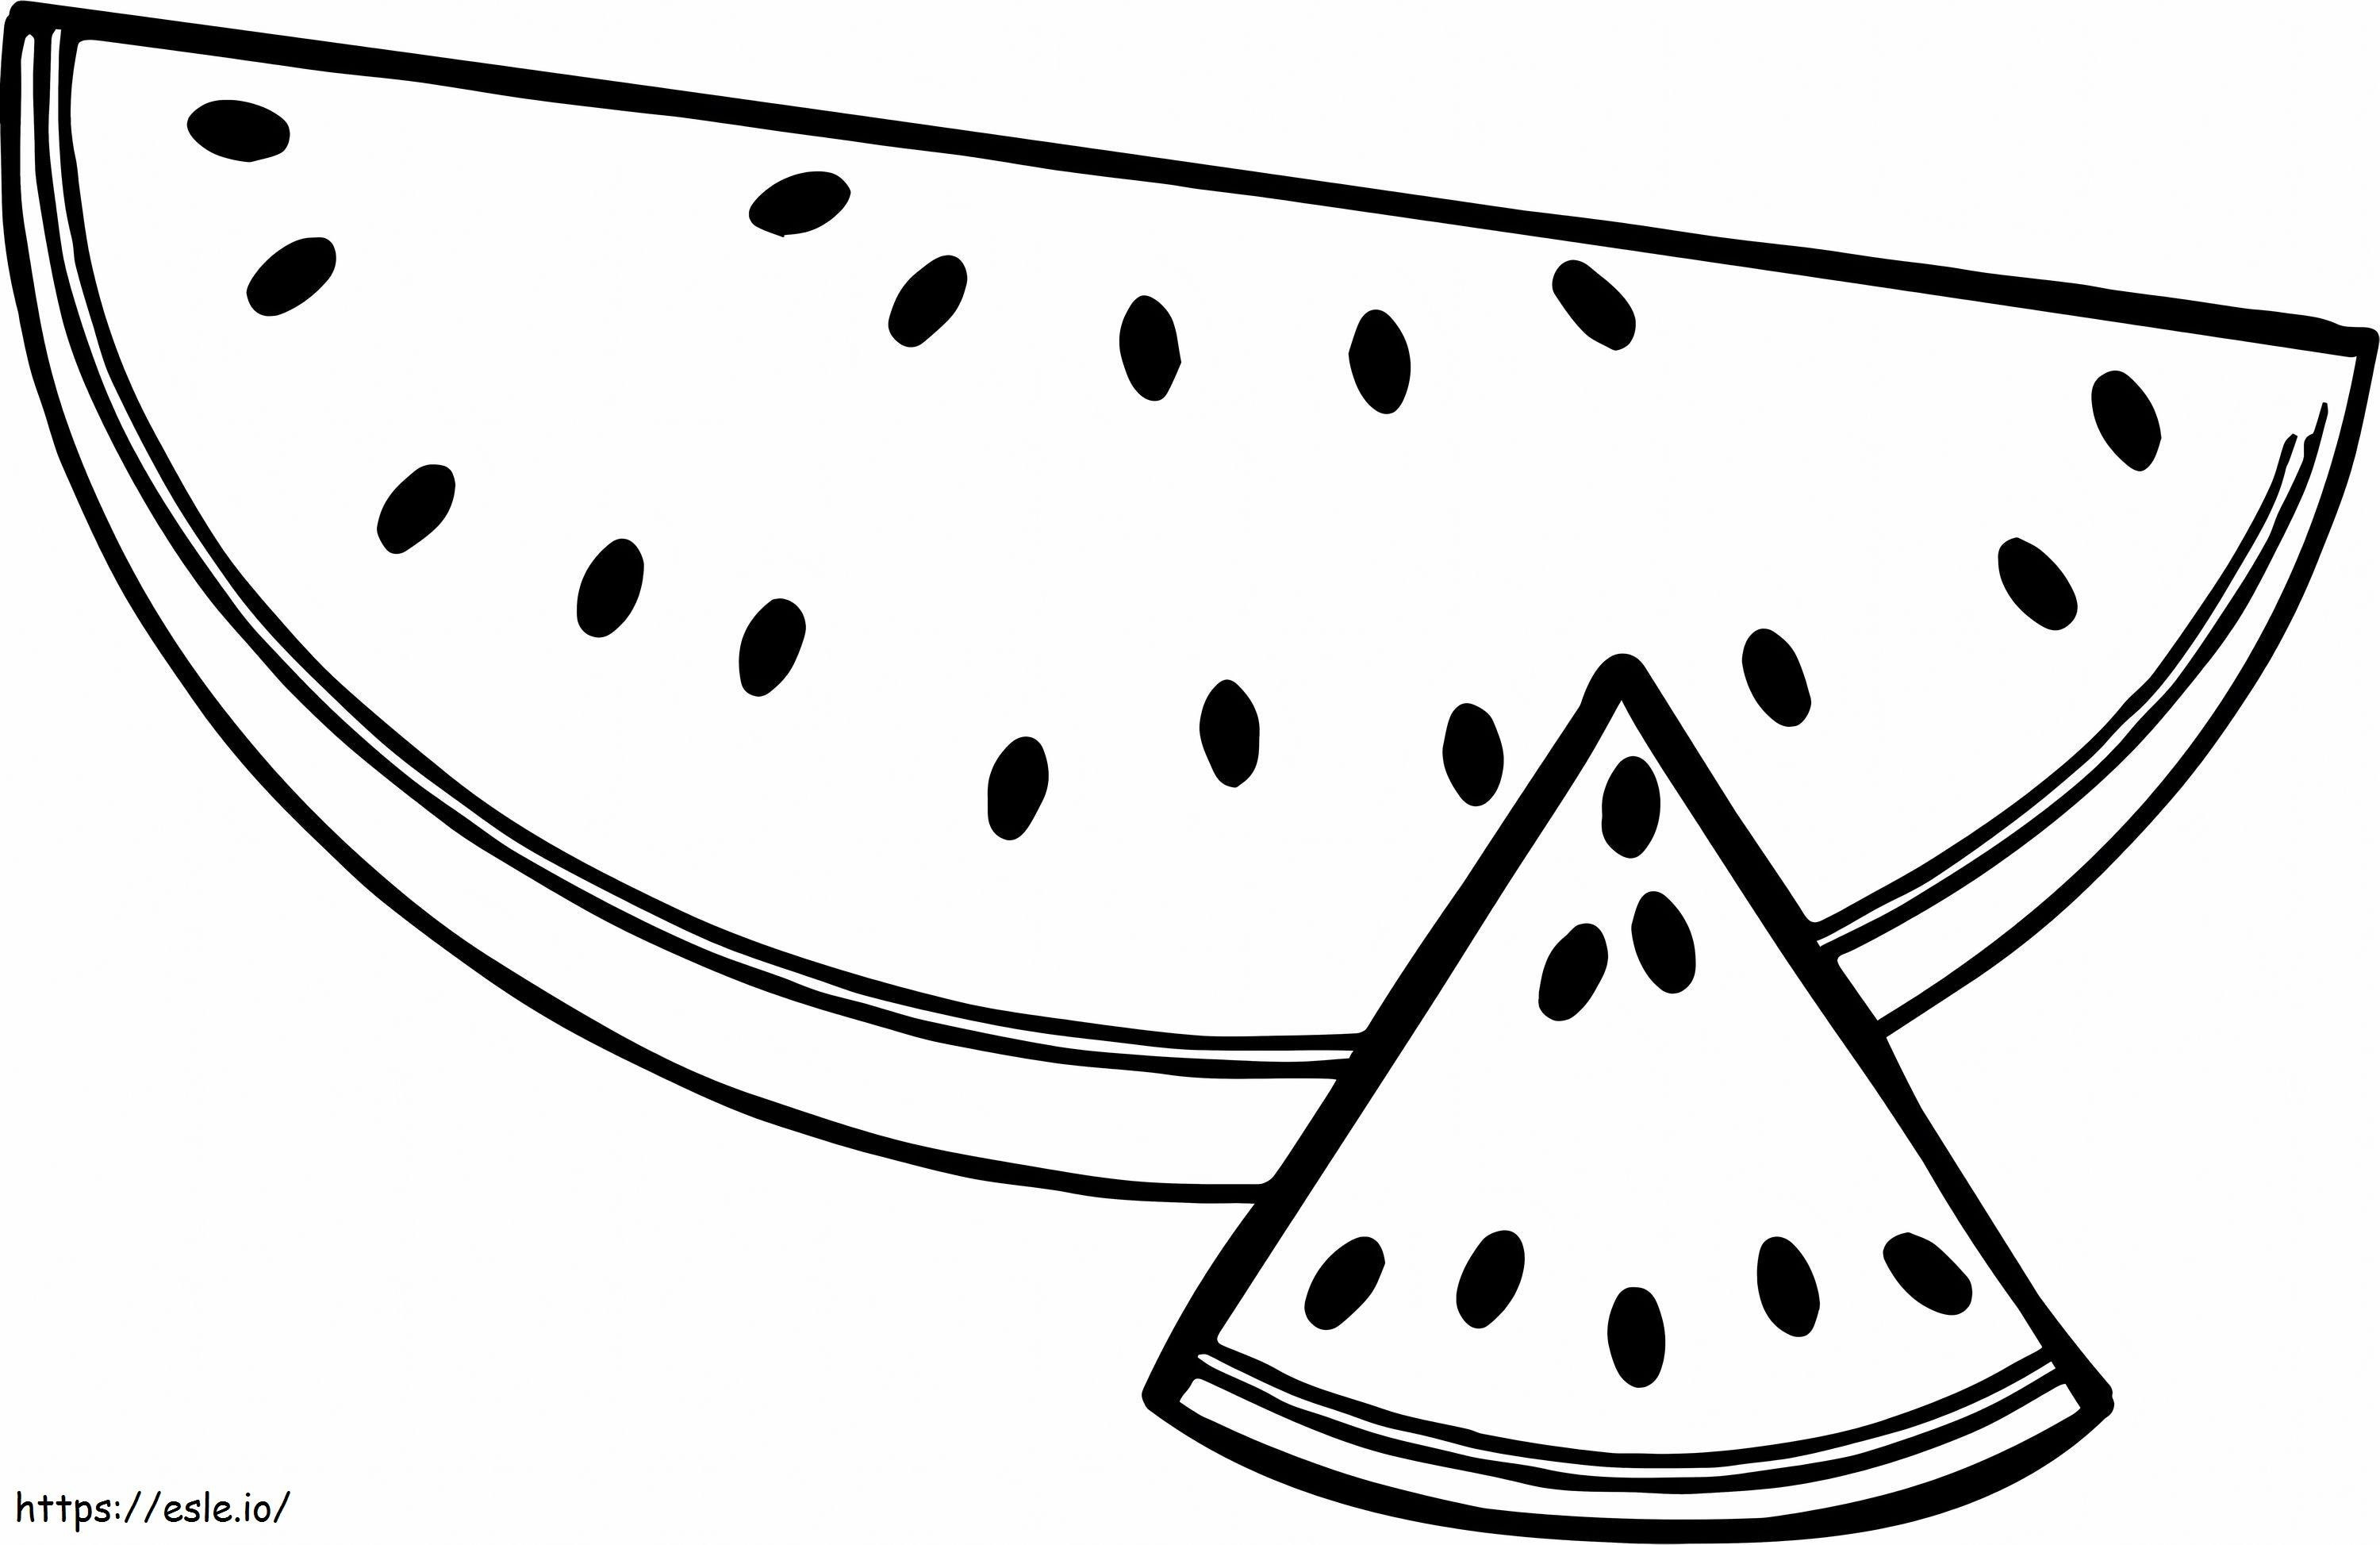 Een halve en een driehoek gesneden zomerwatermeloen kleurplaat kleurplaat